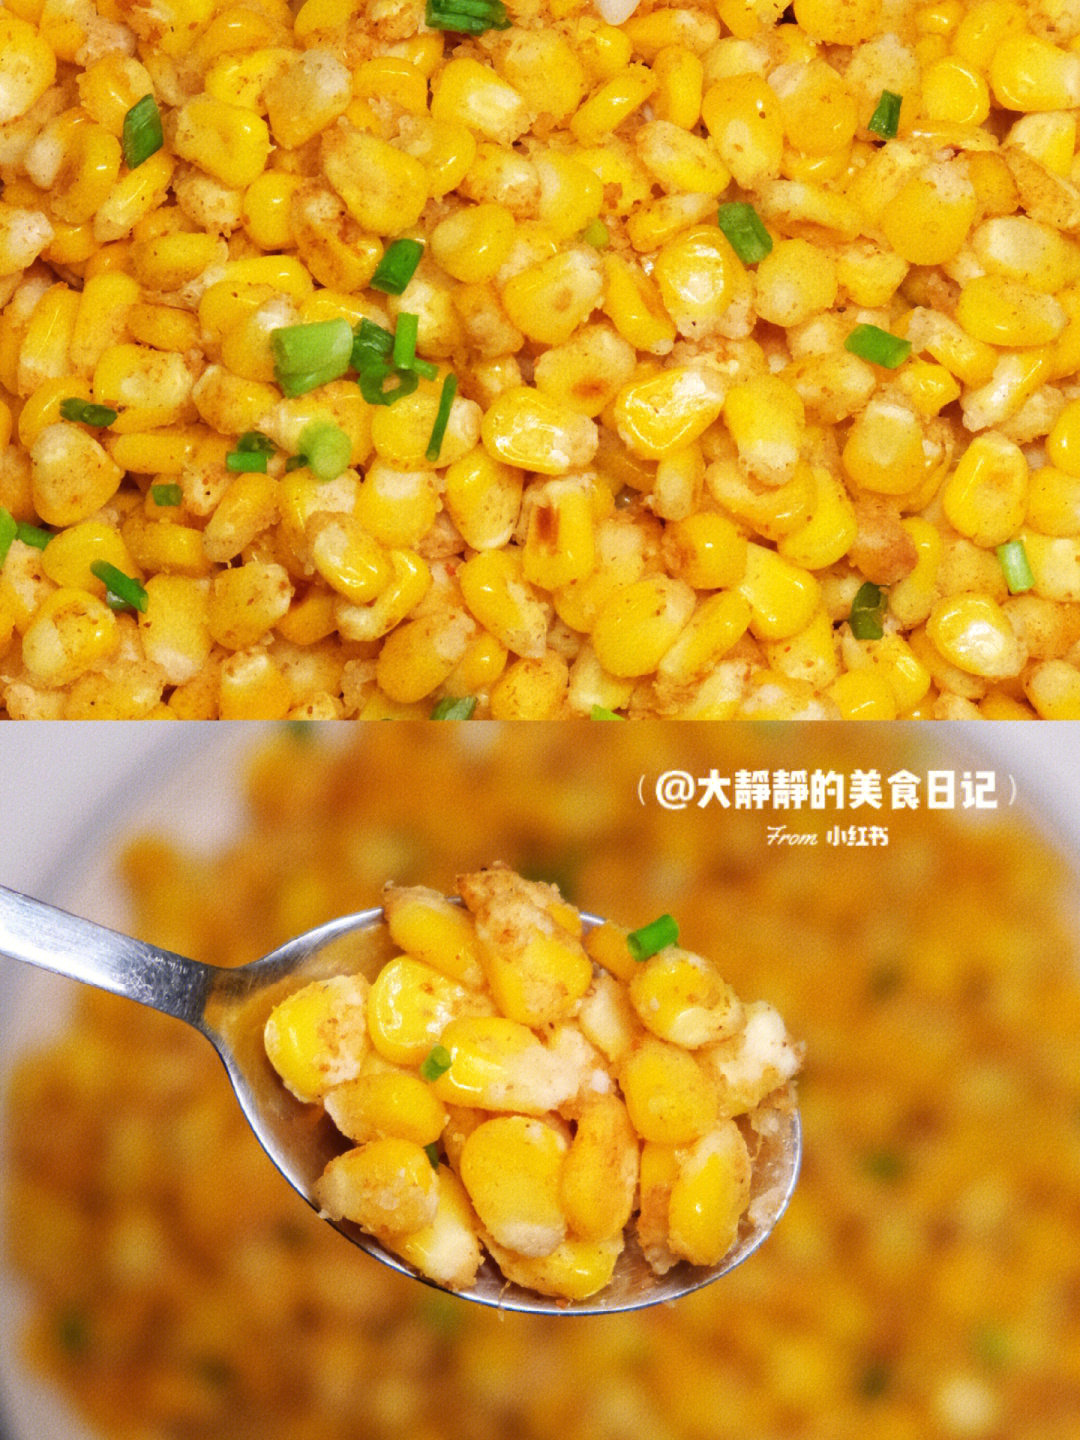 95椒盐玉米粒食材:玉米,淀粉9215步骤:16615准备好玉米粒